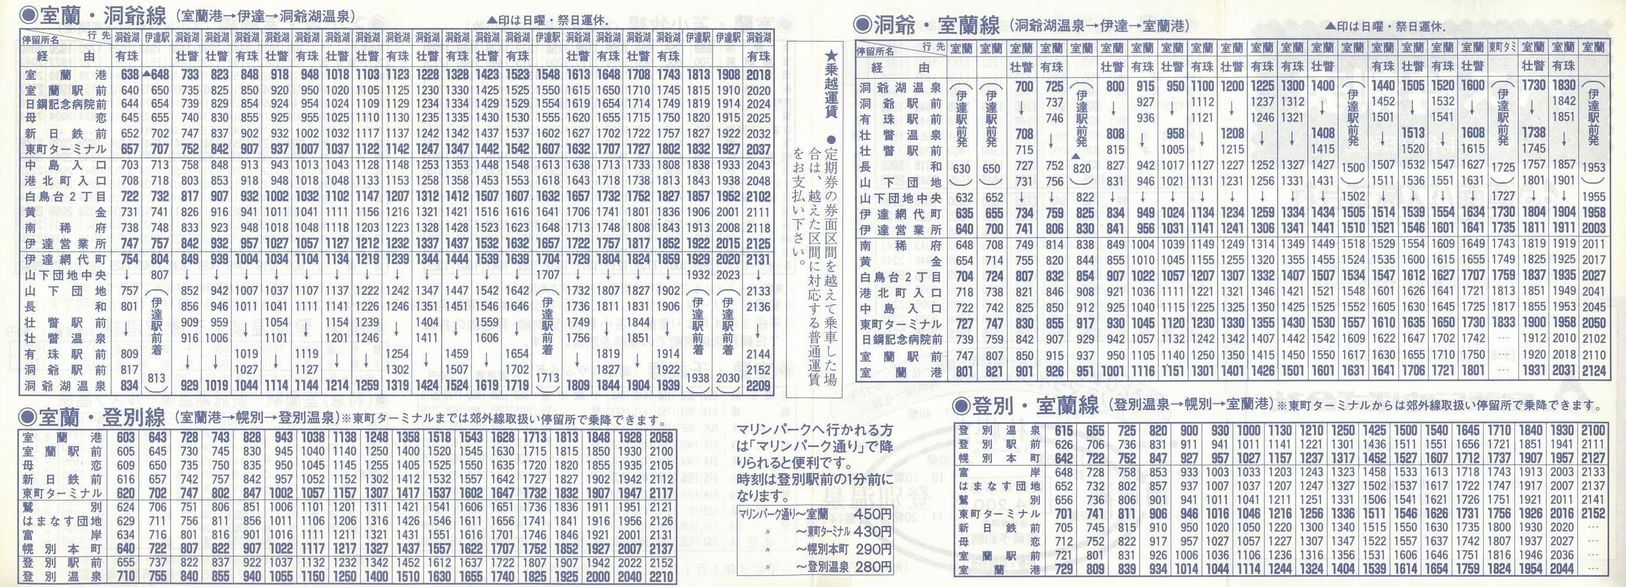 1991-04-01_oX_ōxO\